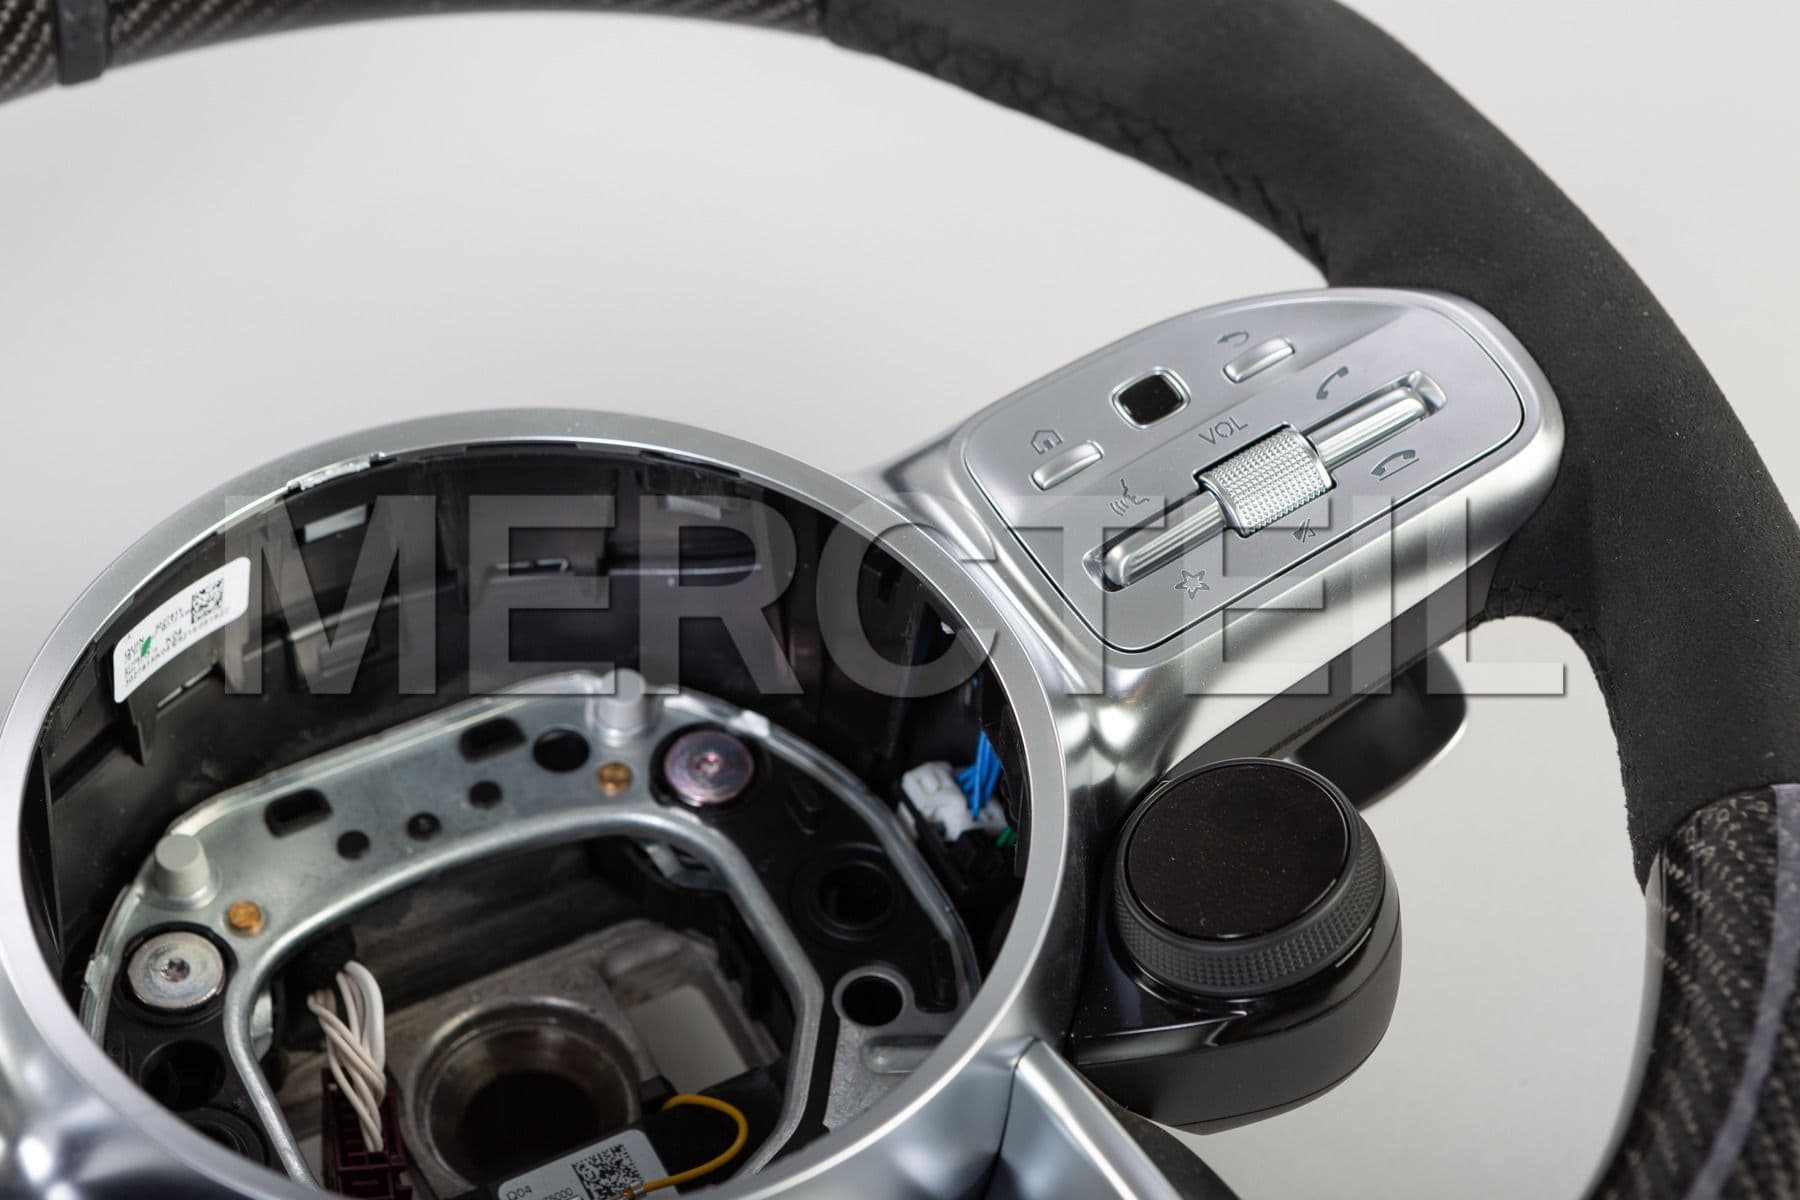 AMG Carbon Steering Wheel Alcantara; A0004605809 9E38.